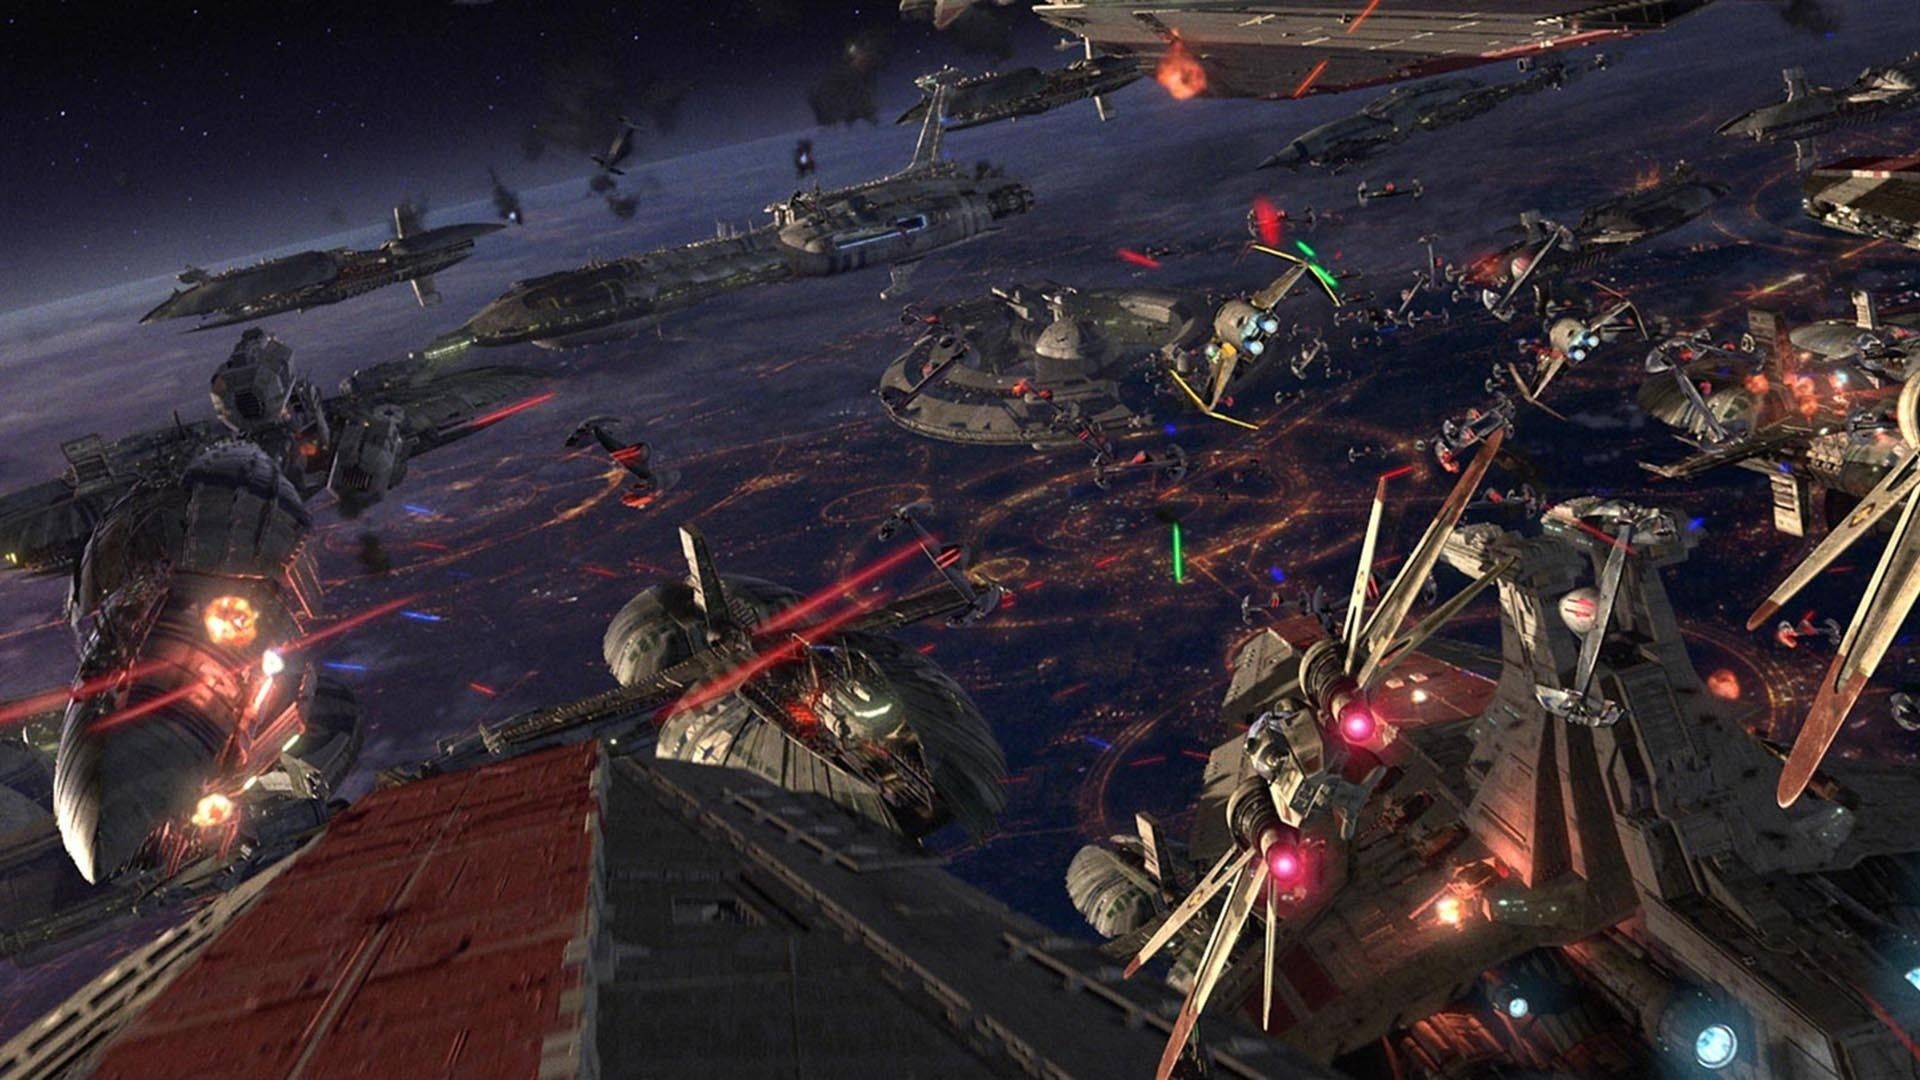 Star Wars Episode Iii Revenge Of The Sith Sci Fi Battle Wars Episode 3 HD Wallpaper